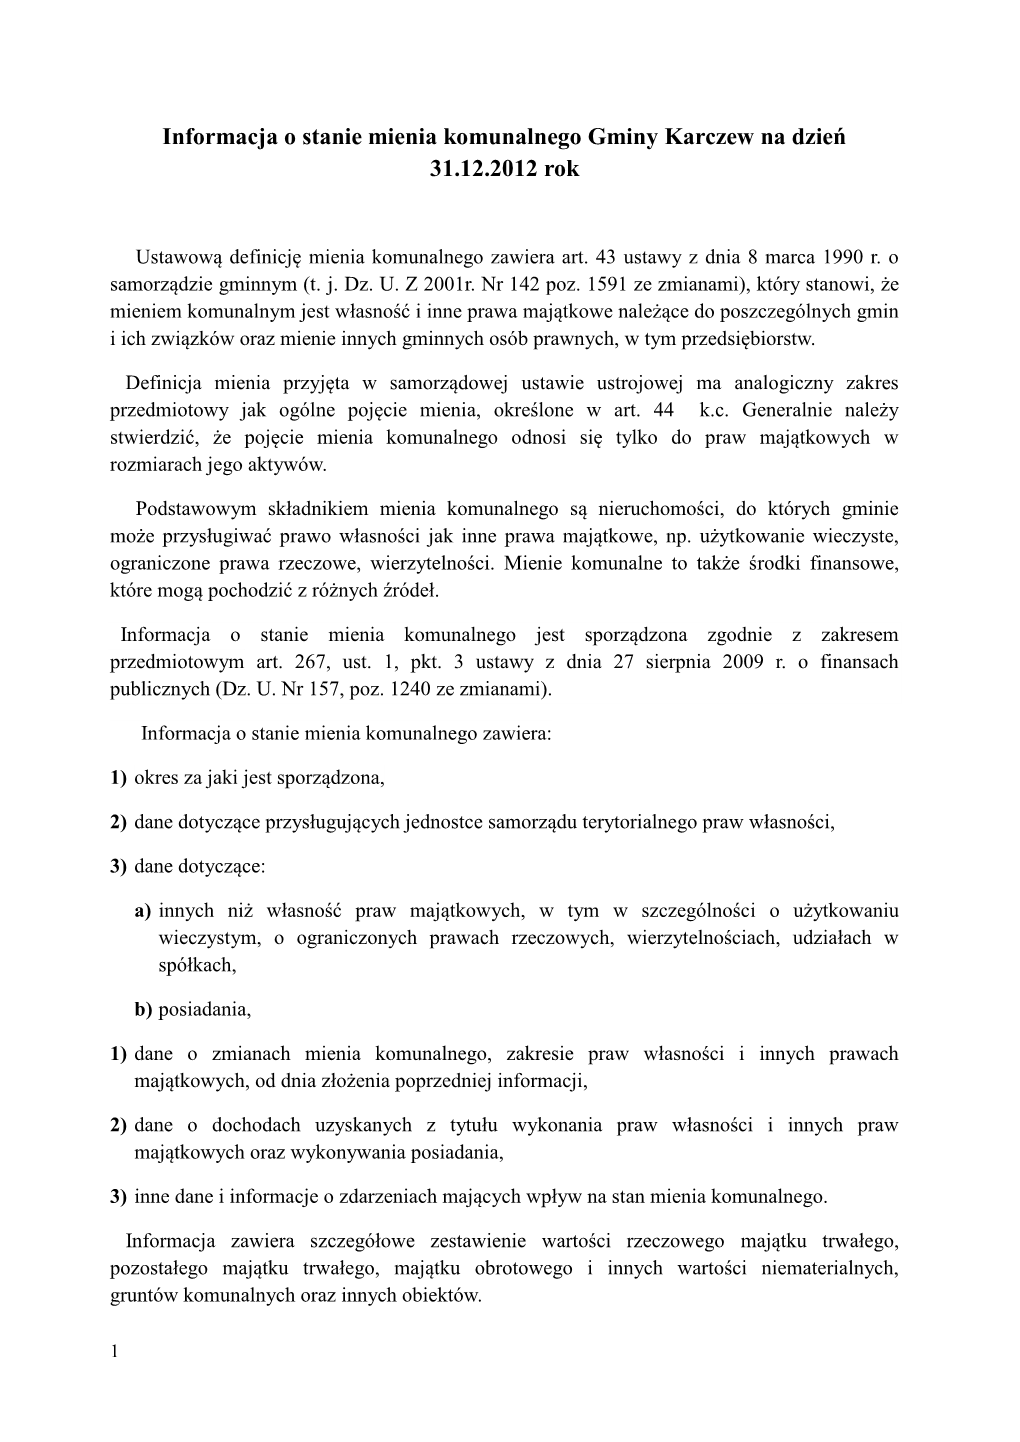 Informacja O Stanie Mienia Komunalnego Gminy Karczew Na Dzień 31.12.2012 Rok